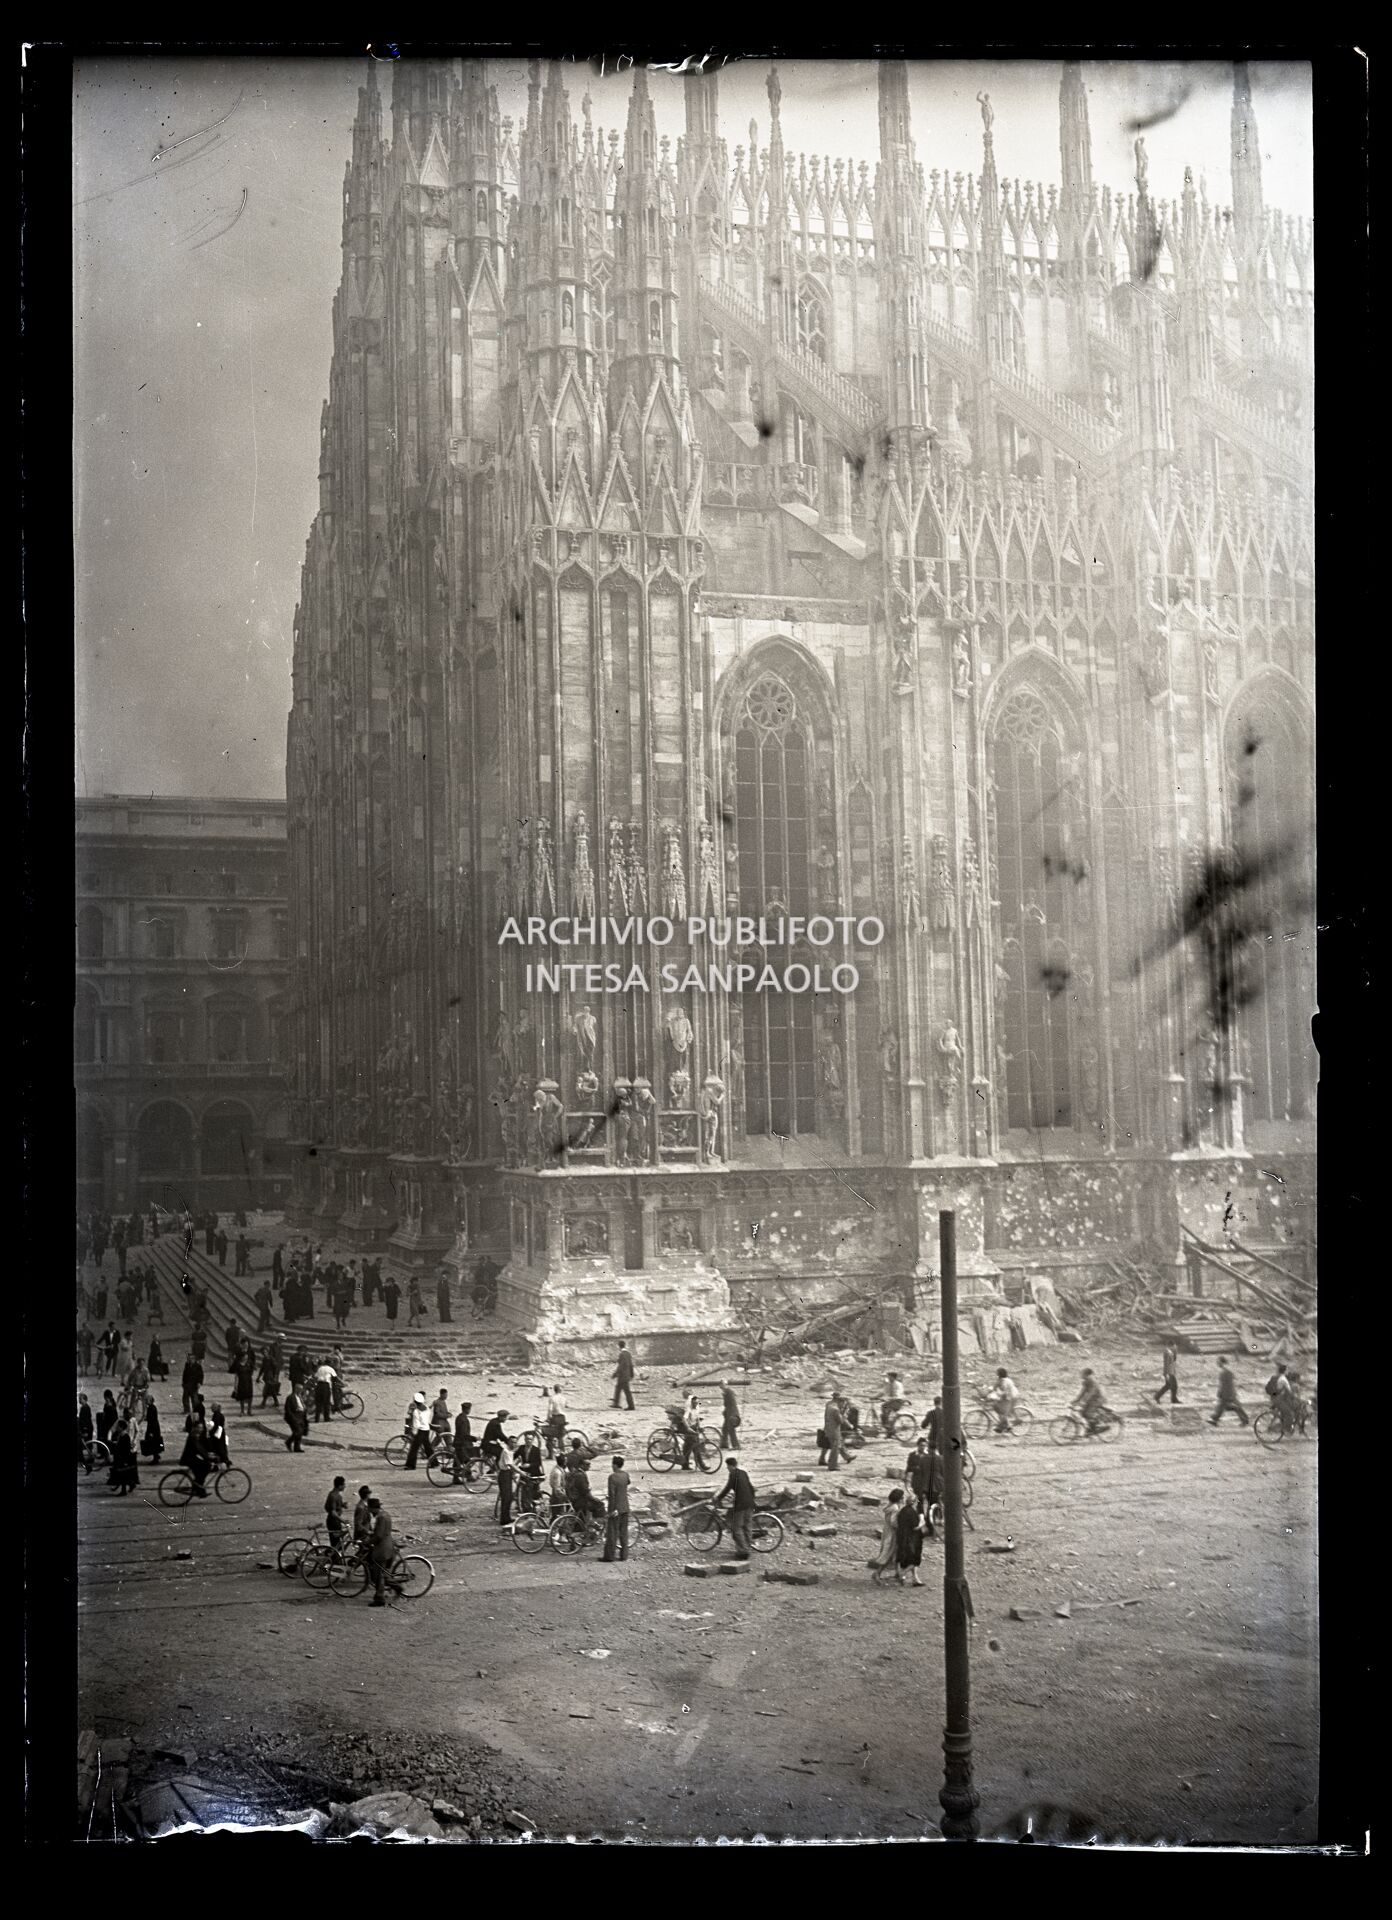 Il lato sud e il sagrato del Duomo di Milano all'indomani dei bombardamenti che hanno danneggiato la cattedrale